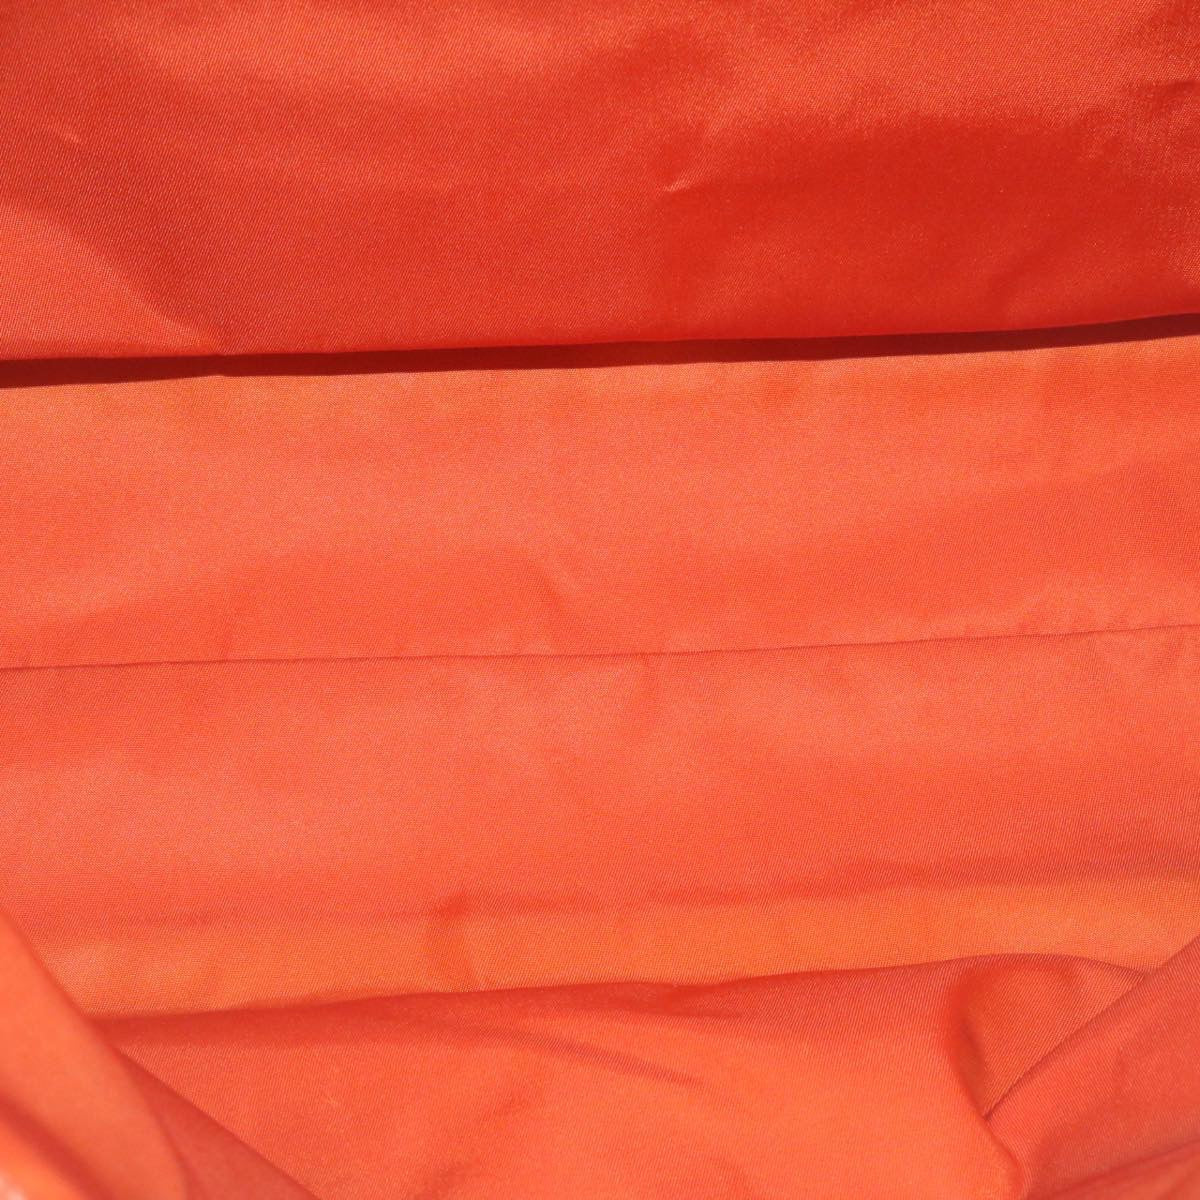 PRADA Tote Bag Nylon Khaki Auth ki1679